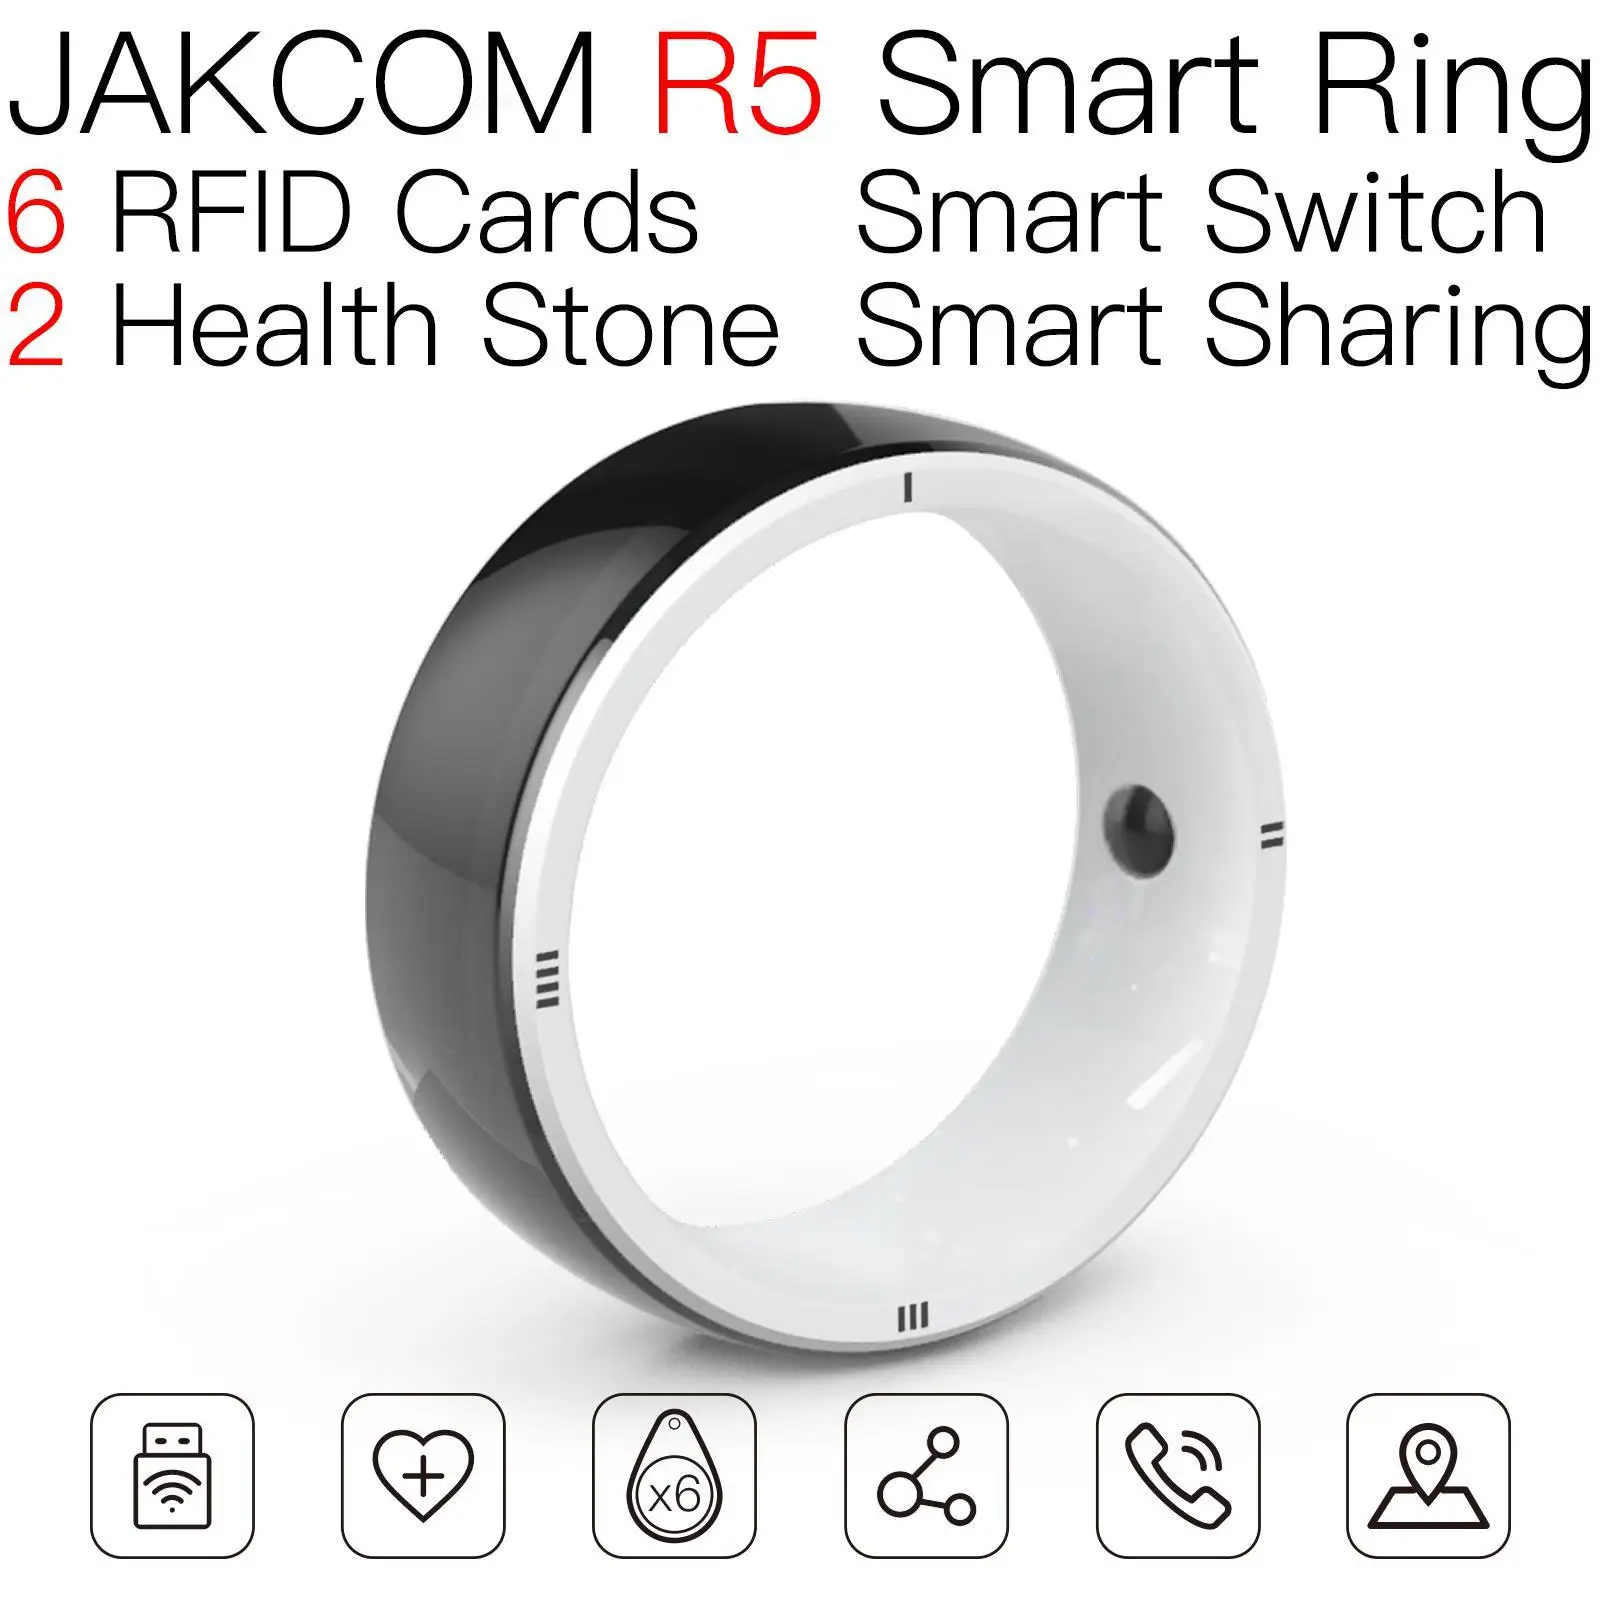 

Умное кольцо JAKCOM R5, лучший подарок с микроконтроллером pic, бирка для микрочипа, бирки rfid, грузовик, магазин ziggy, партия, брелок для стирки